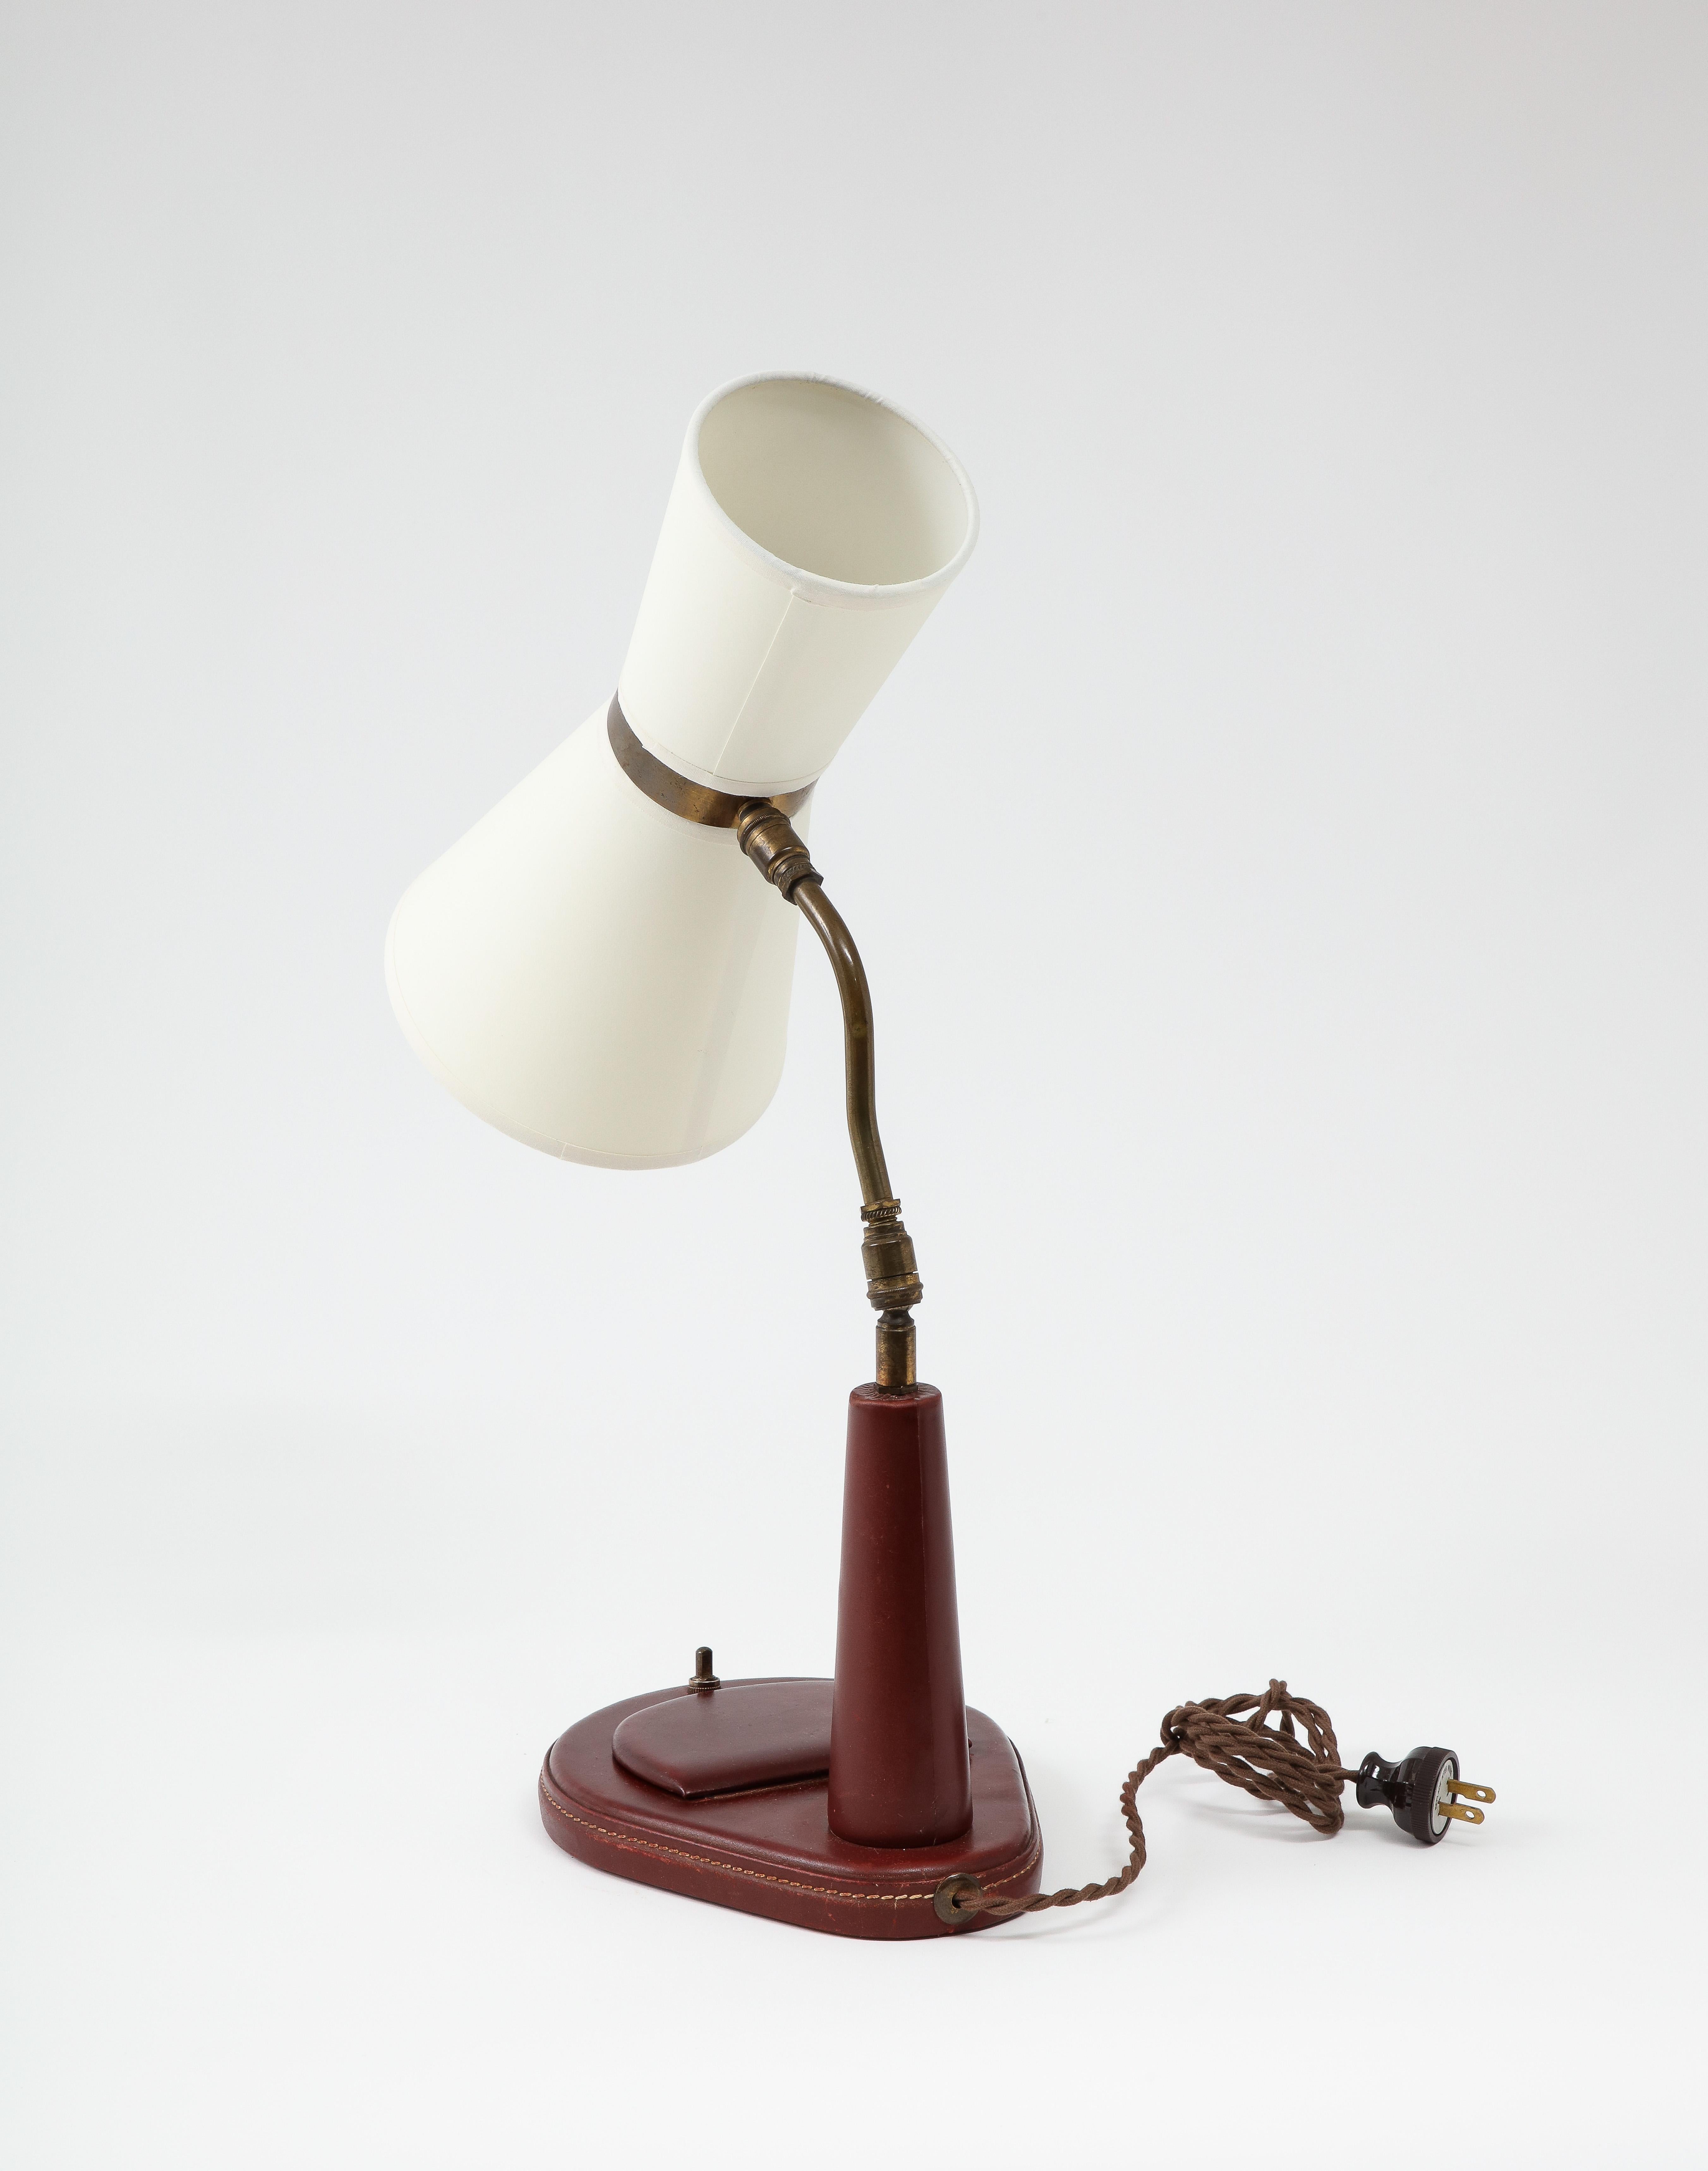 French Lancel Burgundy Leather Desk Lamp after Adnet, France 1960's For Sale